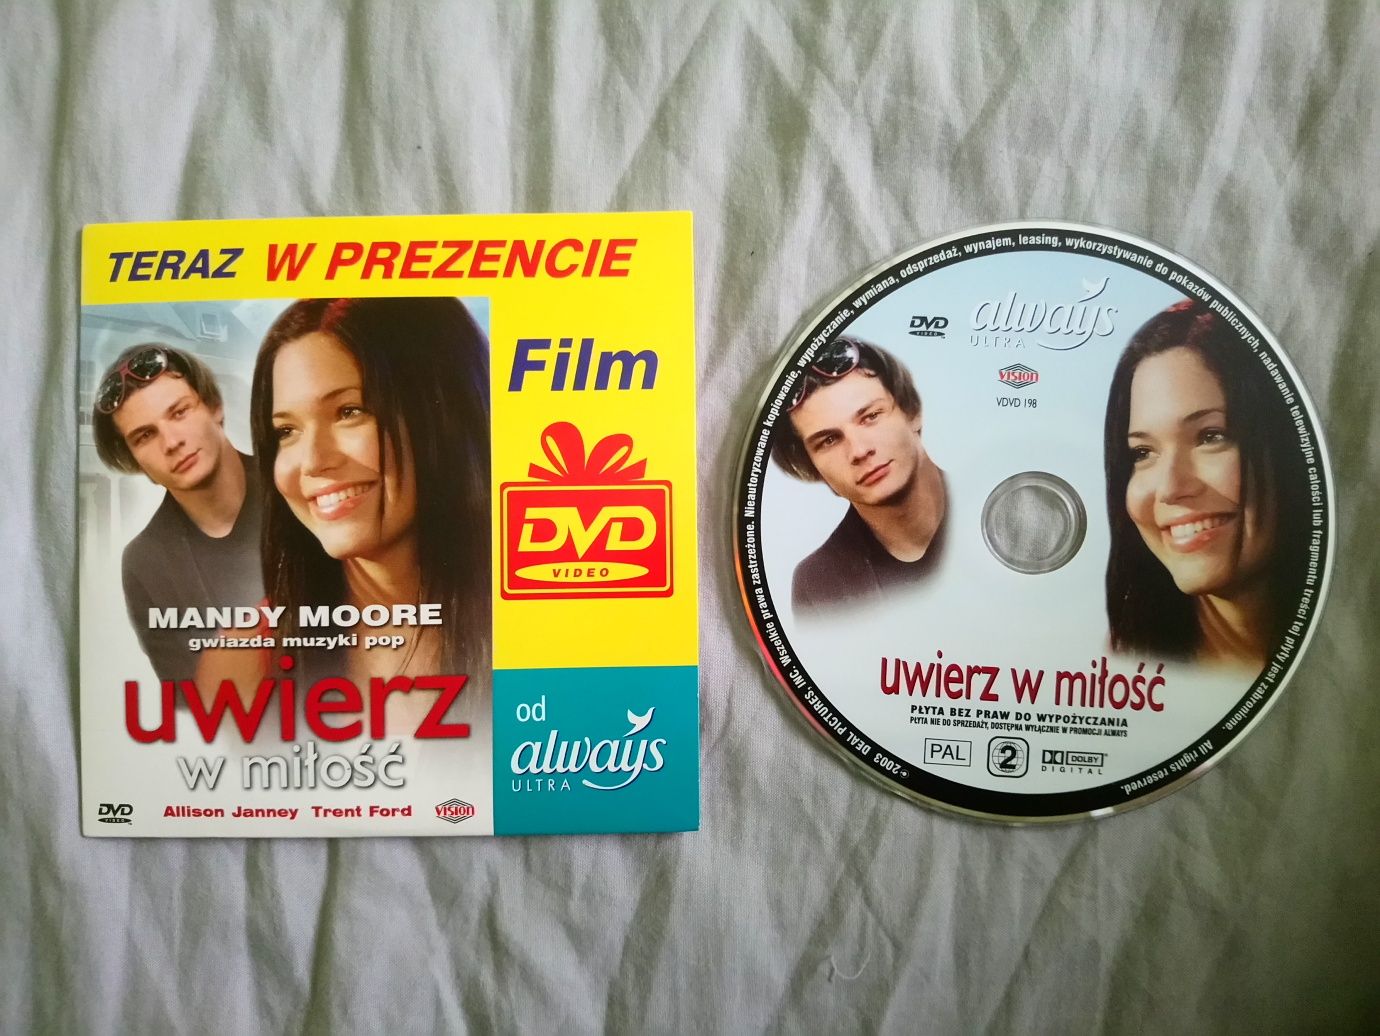 Film DVD Uwierz w miłość, reż. Clare Kilner, 2003